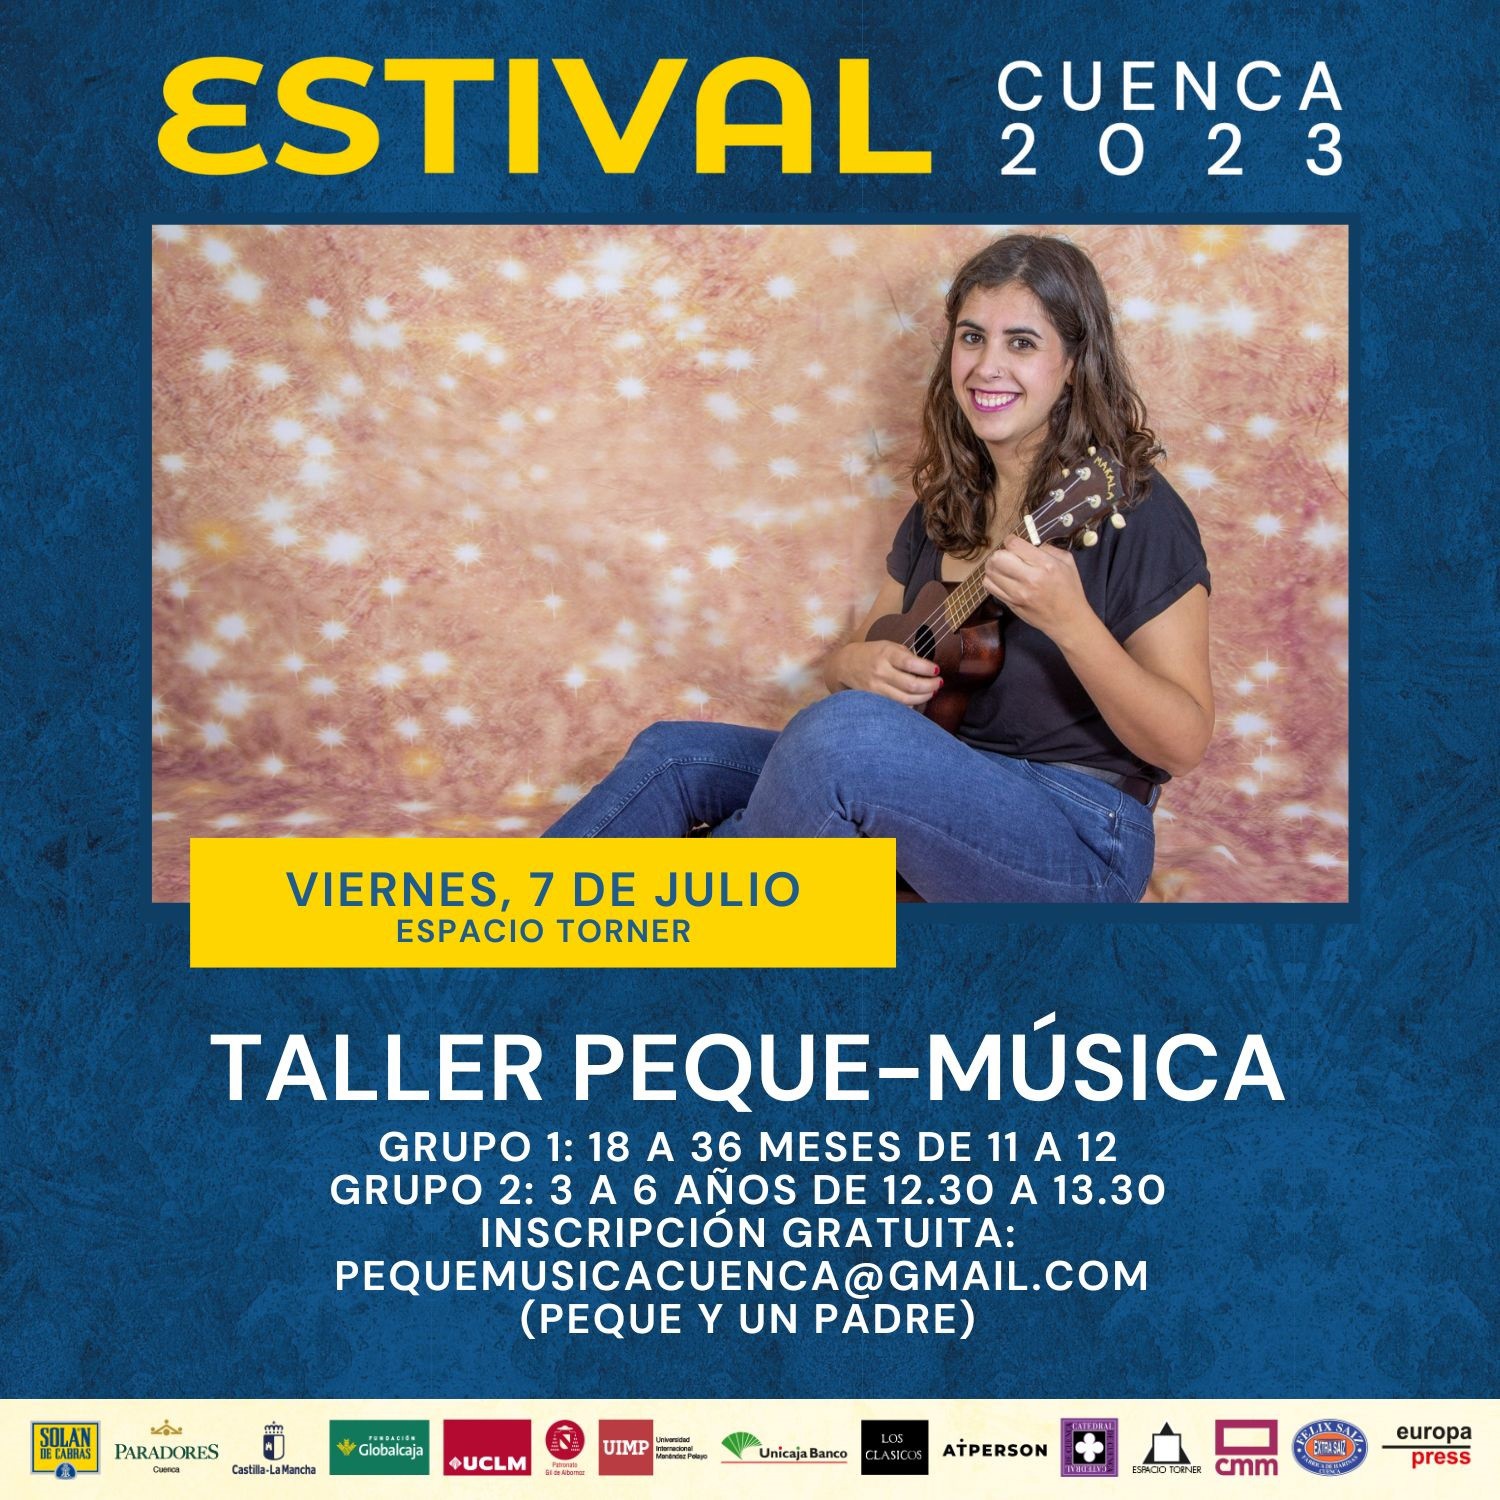 Cartel del Taller de Peque-Música que ofrece Blanca Pinedo.